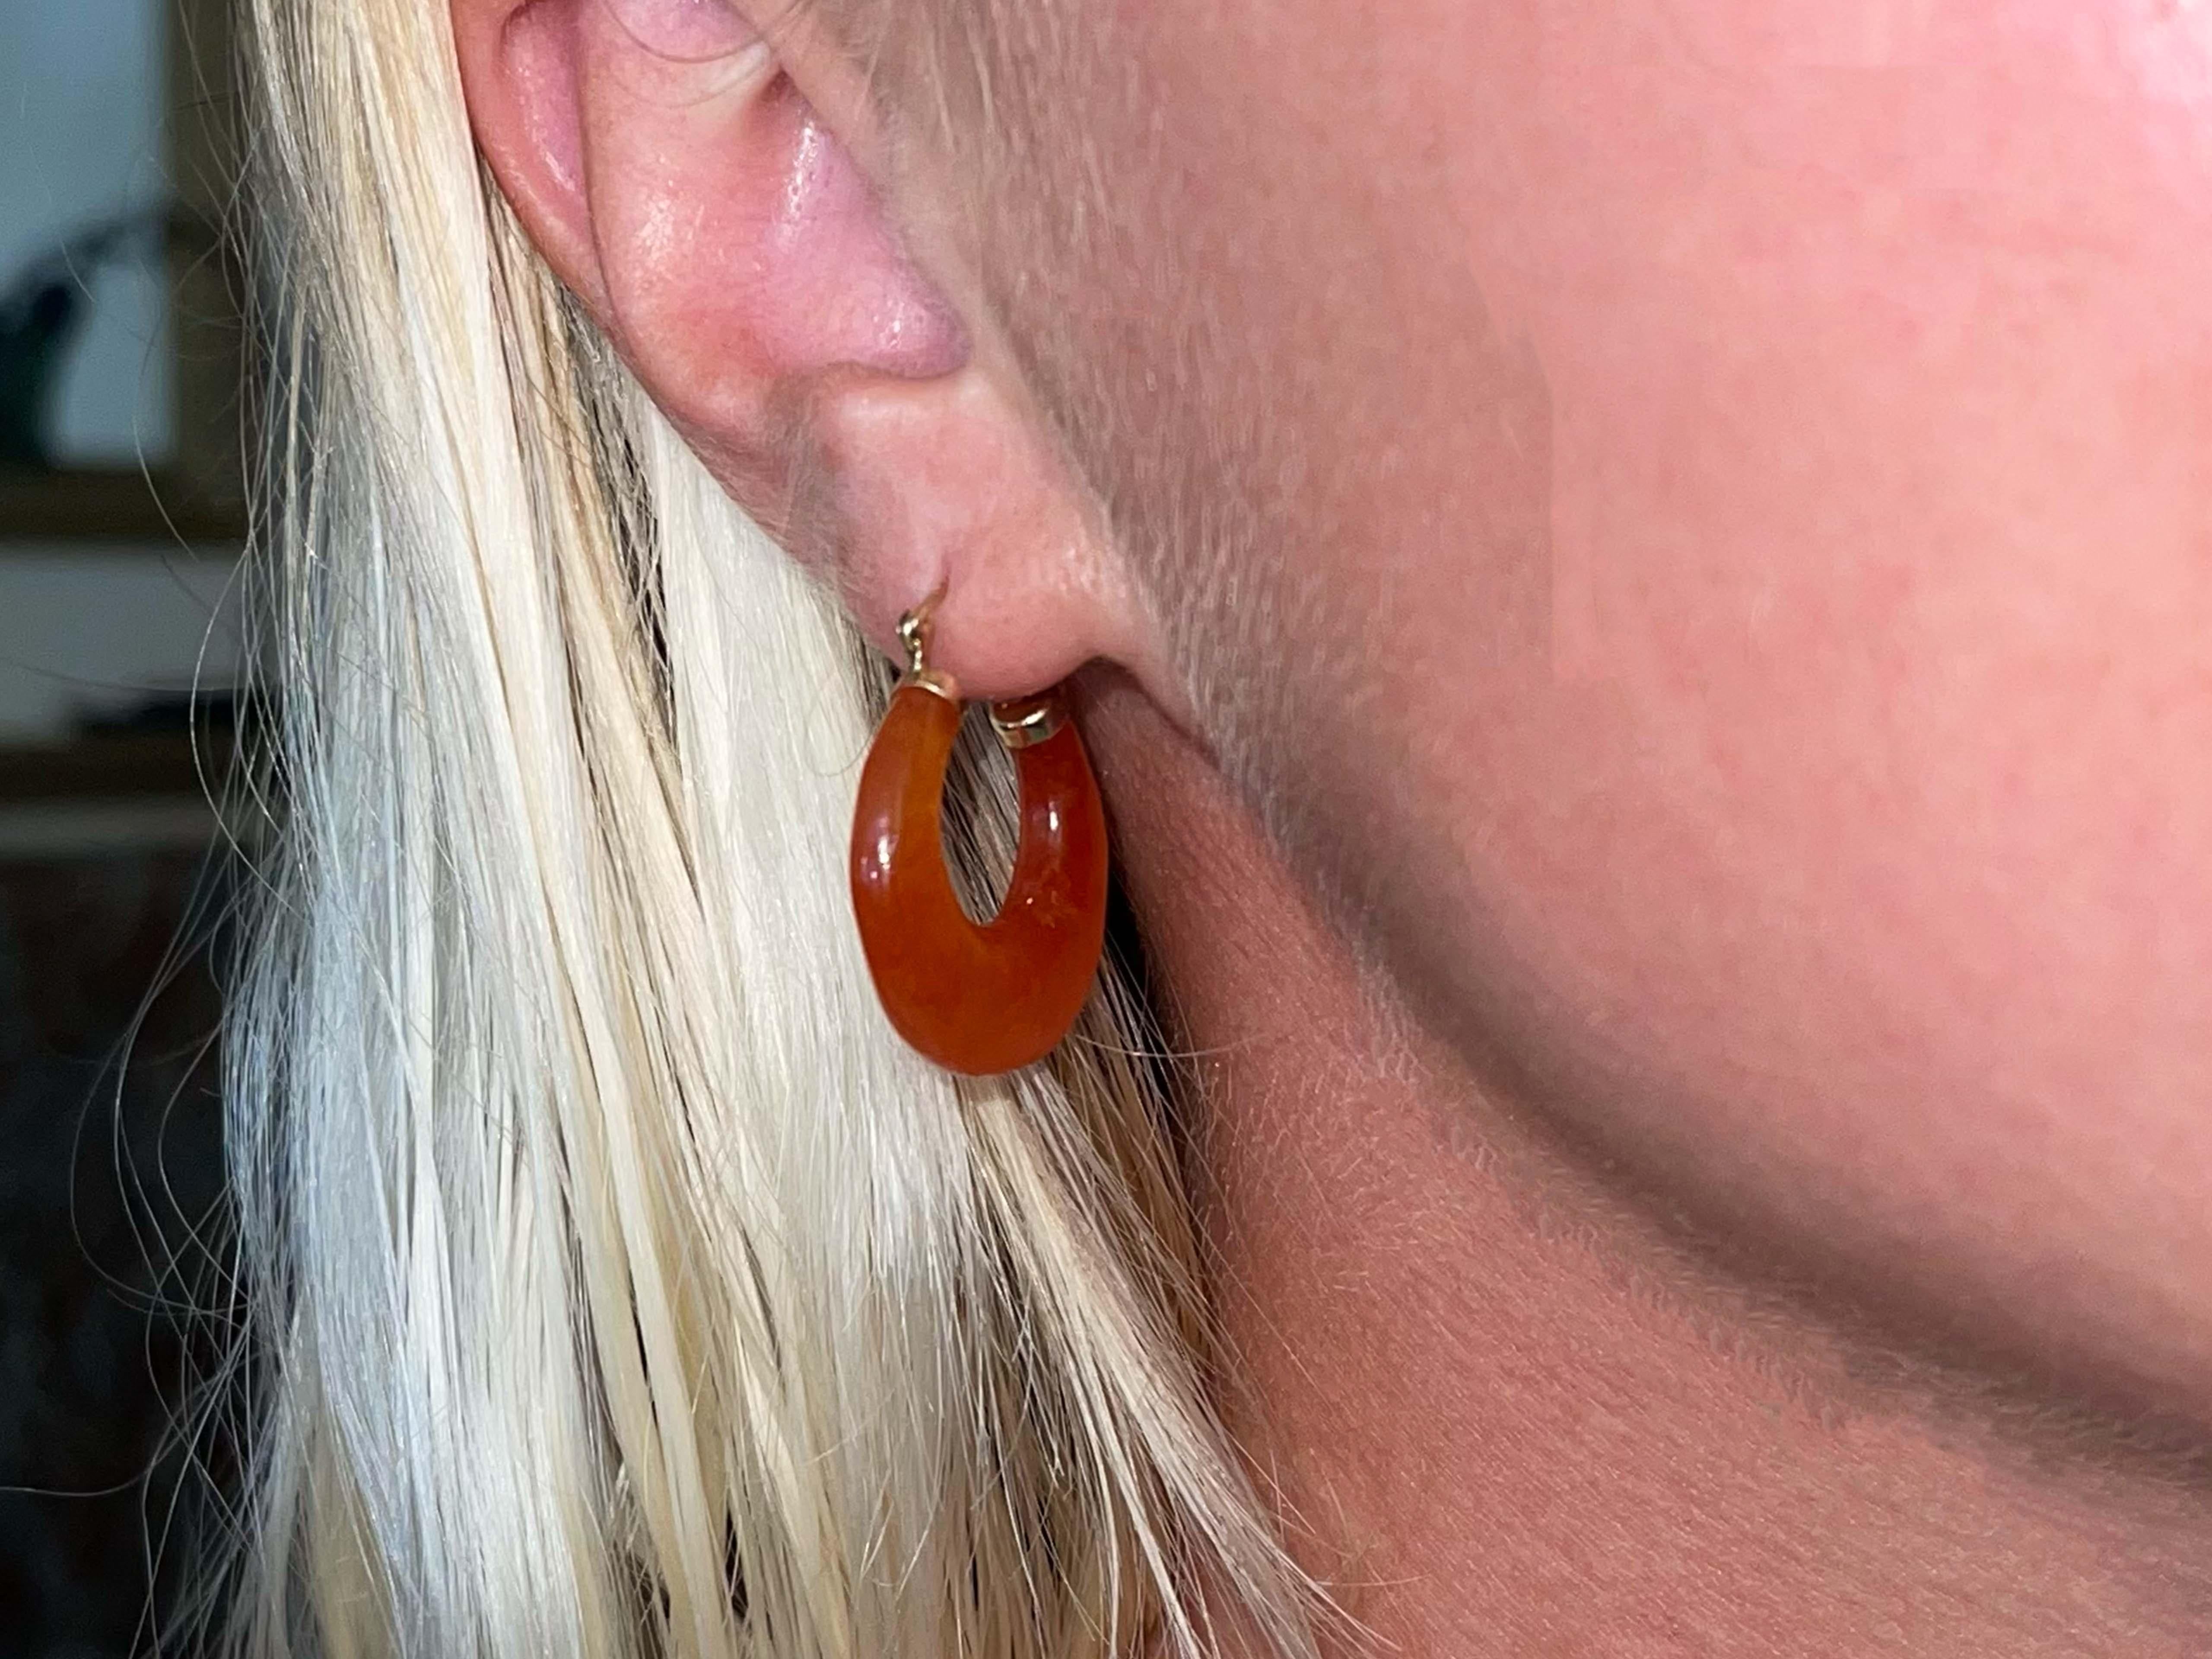 Ohrringe Spezifikationen:

Metall: 14K Gelbgold

Edelstein: Karneol

Länge des Ohrrings: 23.67 mm

Gesamtgewicht: 8,1 Gramm

Gestempelt: 